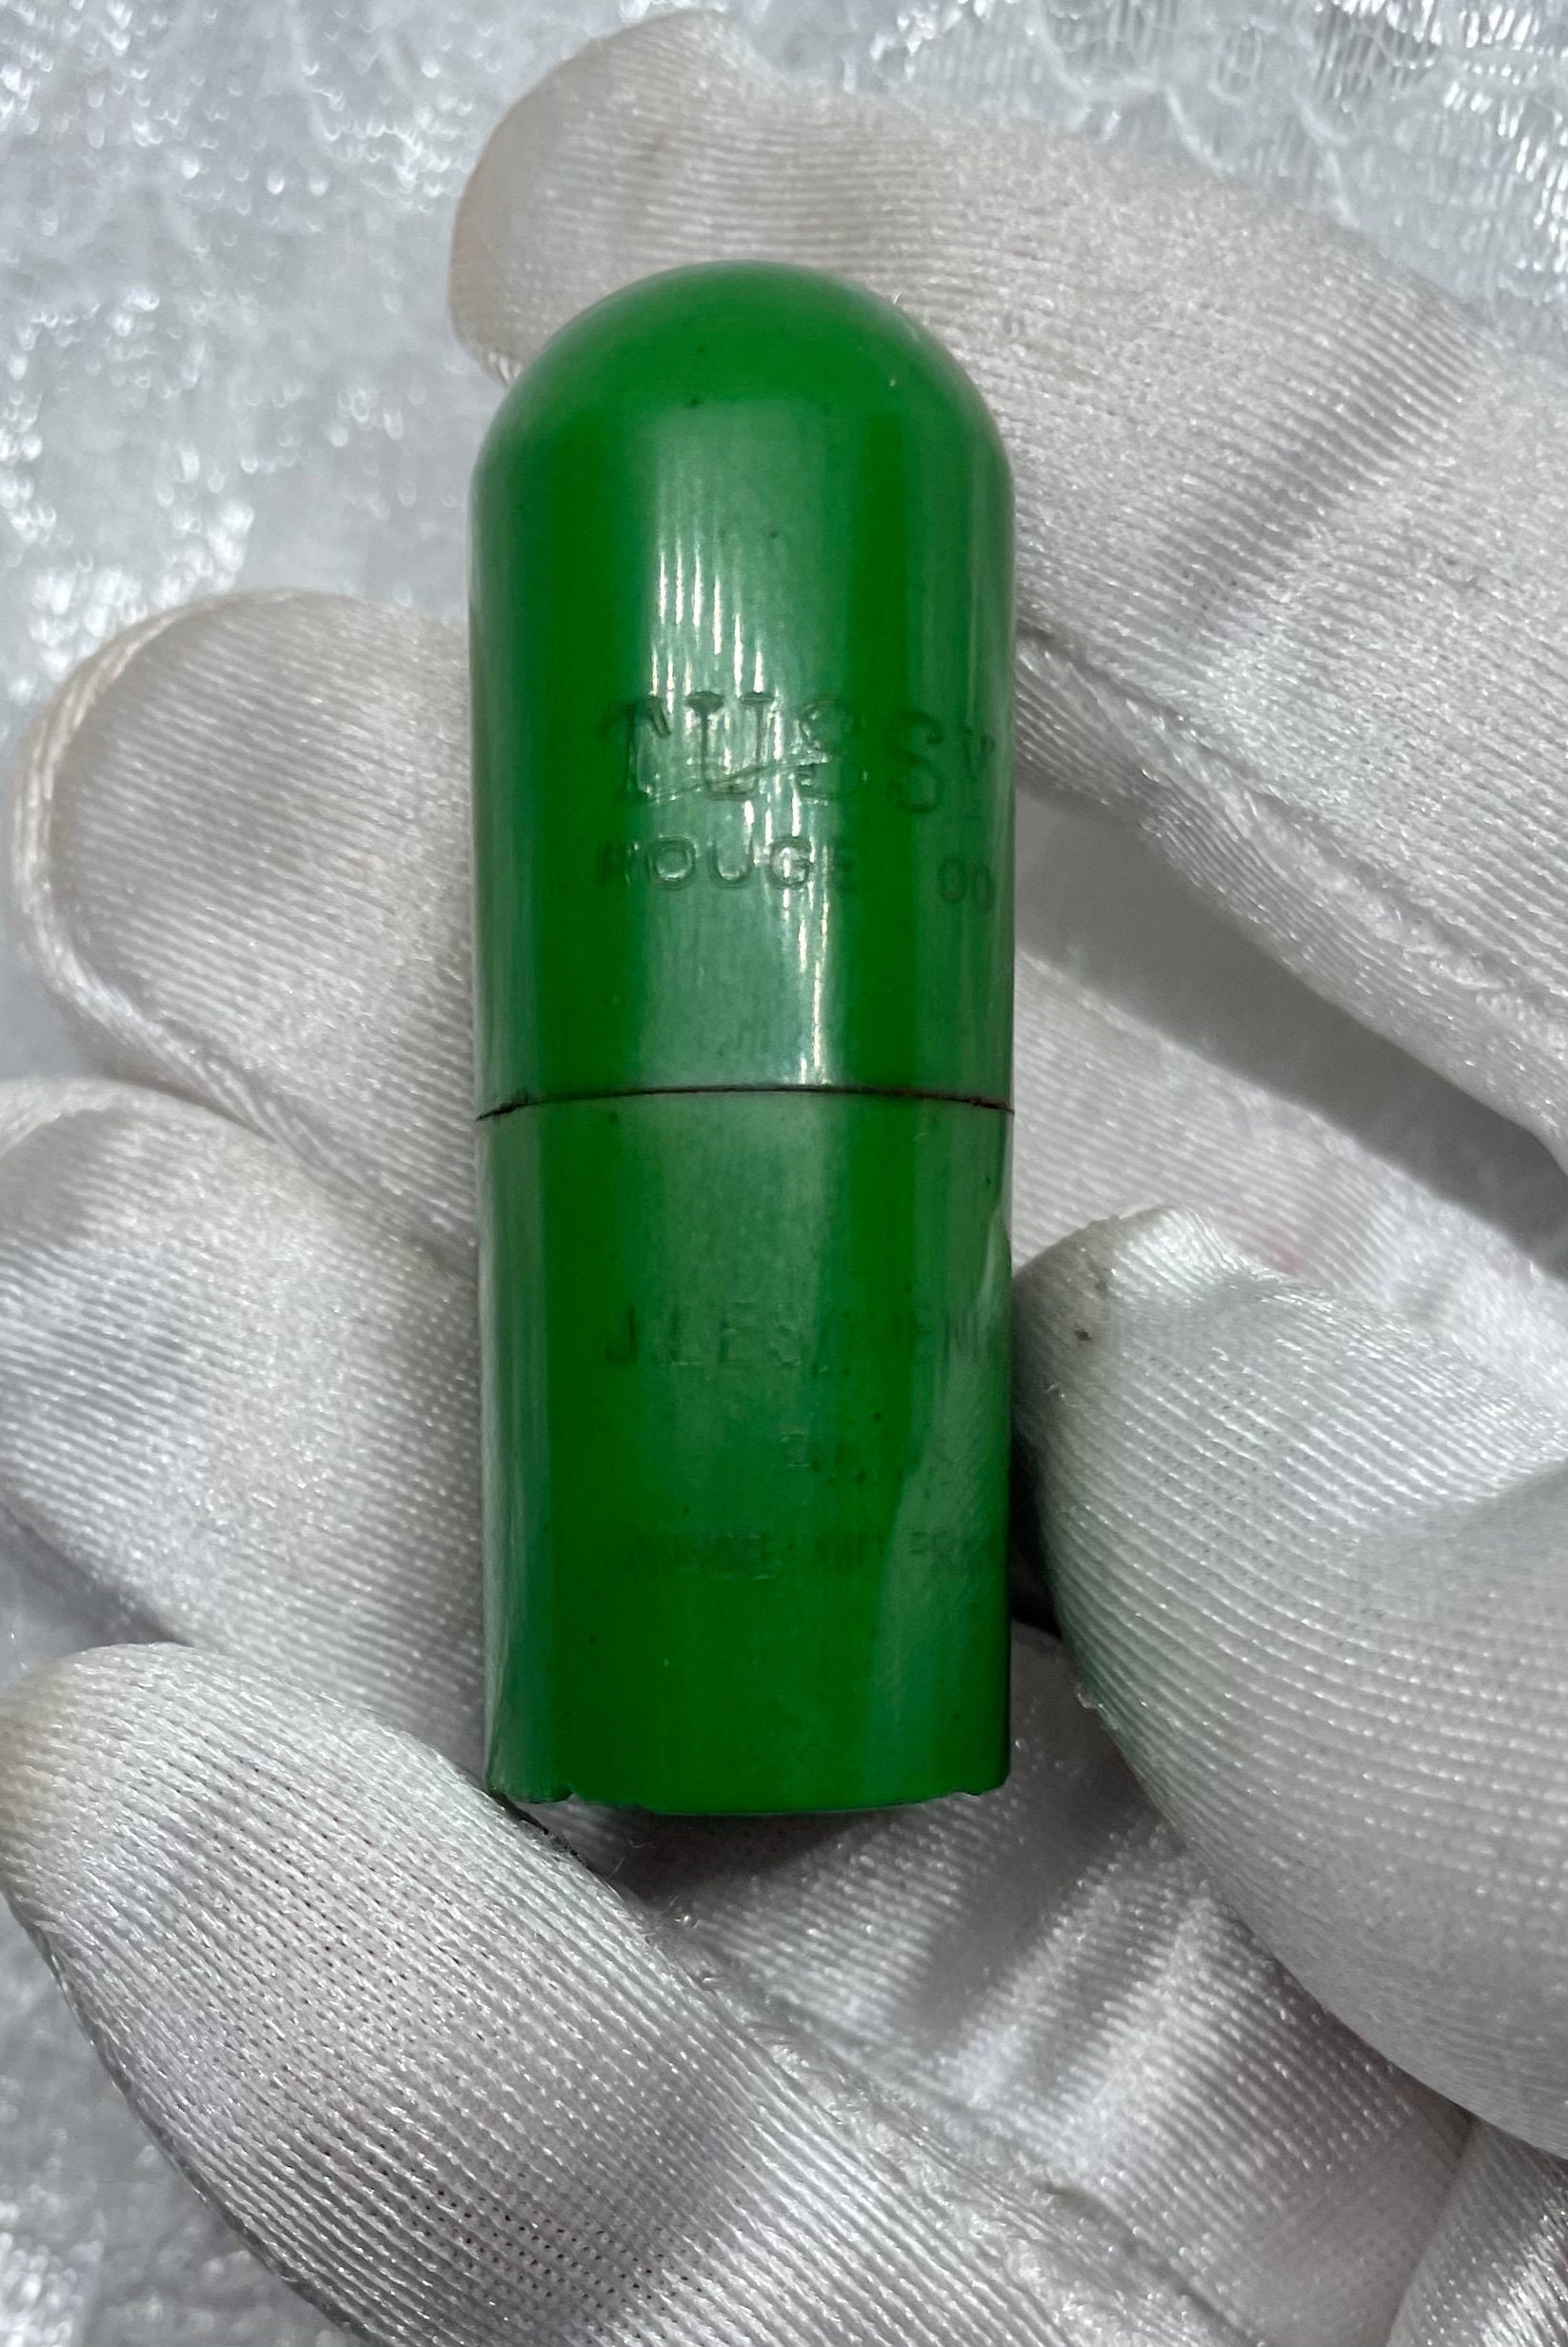 Tussy Rouge Green Bakelit Lippenstift 1930Er Sammlerstück Seltenes Makeup Twist Tube Altes von Etsy - CompactQueen